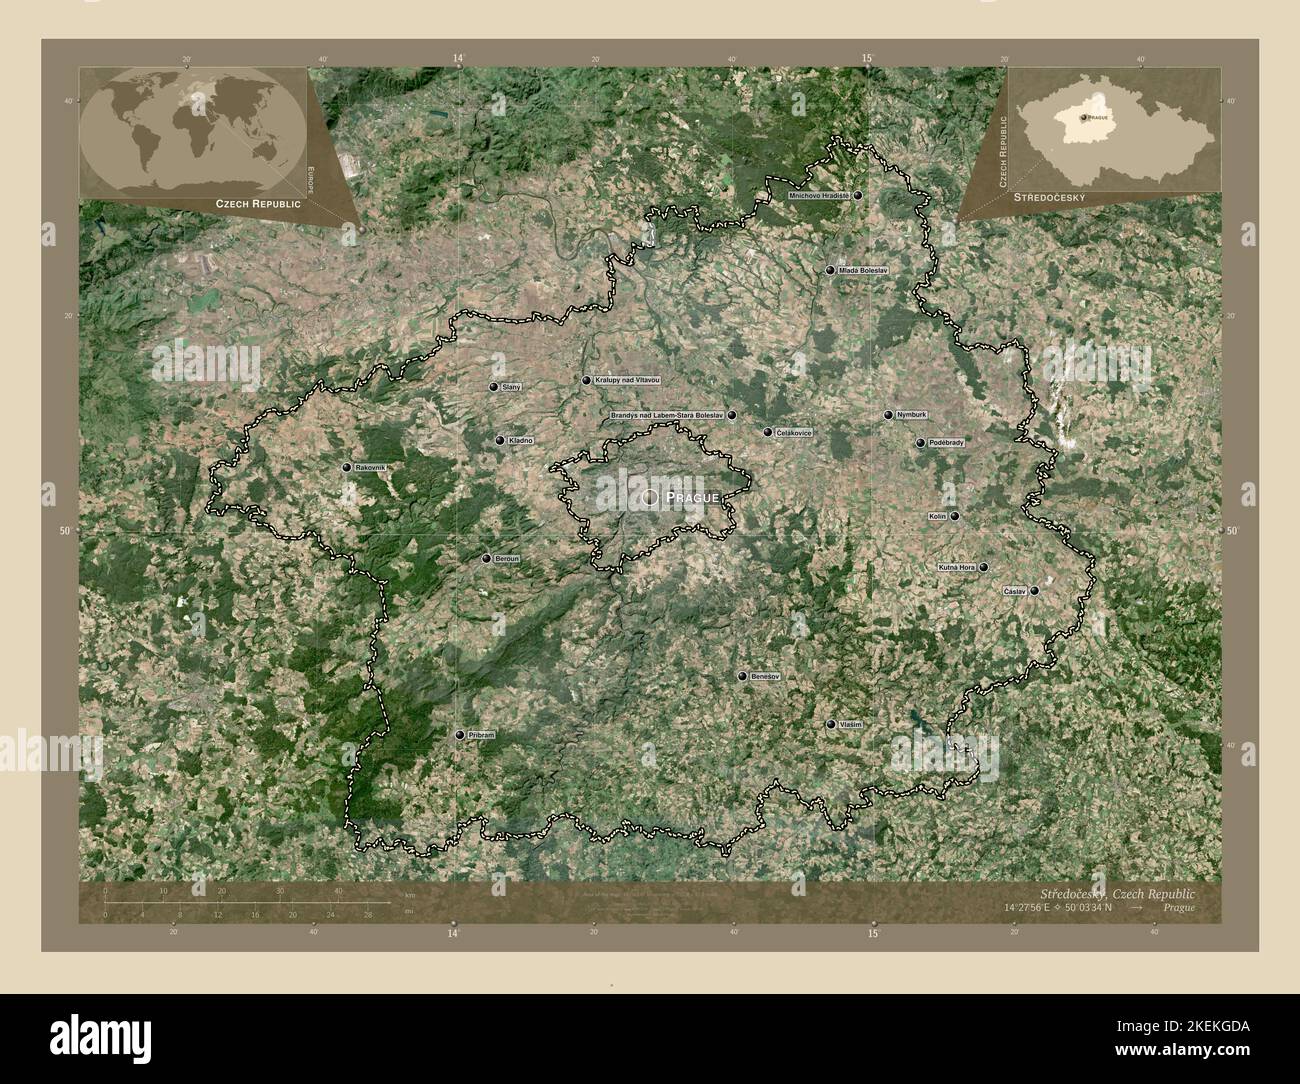 Stredocesky, Region der Tschechischen Republik. Hochauflösende Satellitenkarte. Orte und Namen der wichtigsten Städte der Region. Karte für zusätzliche Eckposition Stockfoto